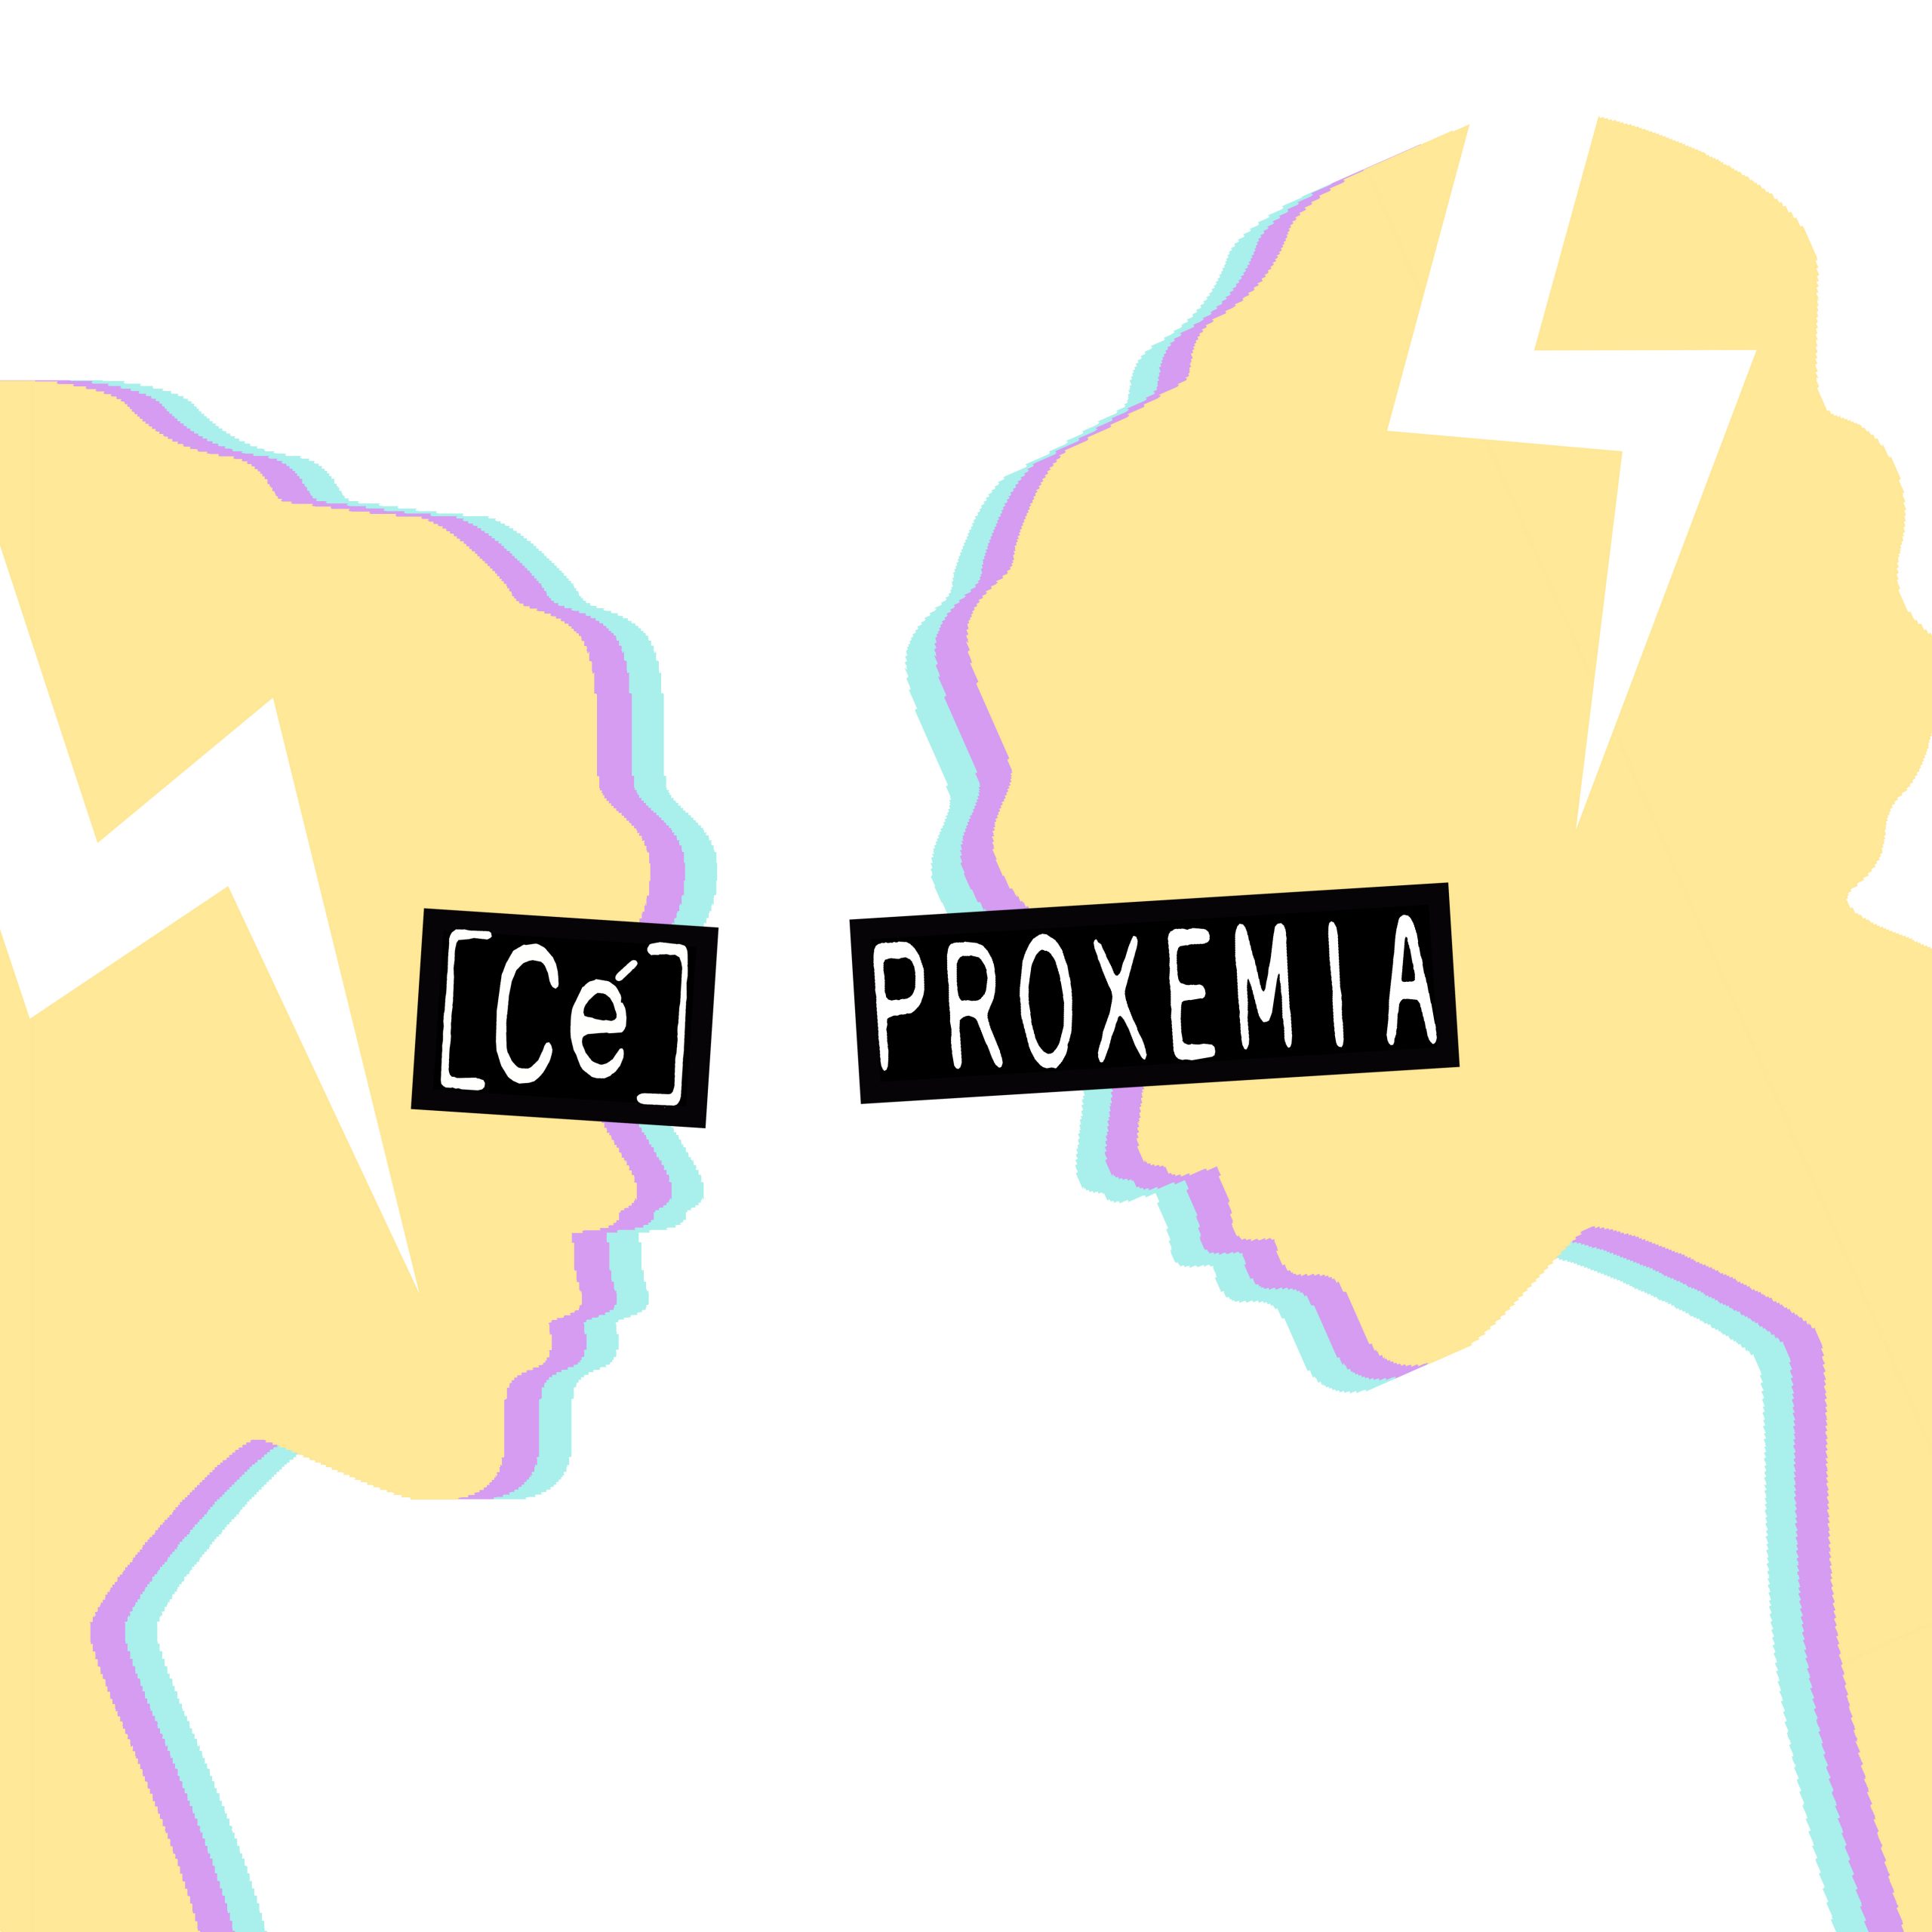 Nuevo lanzamiento "Proxemia", el single debut de [Cé